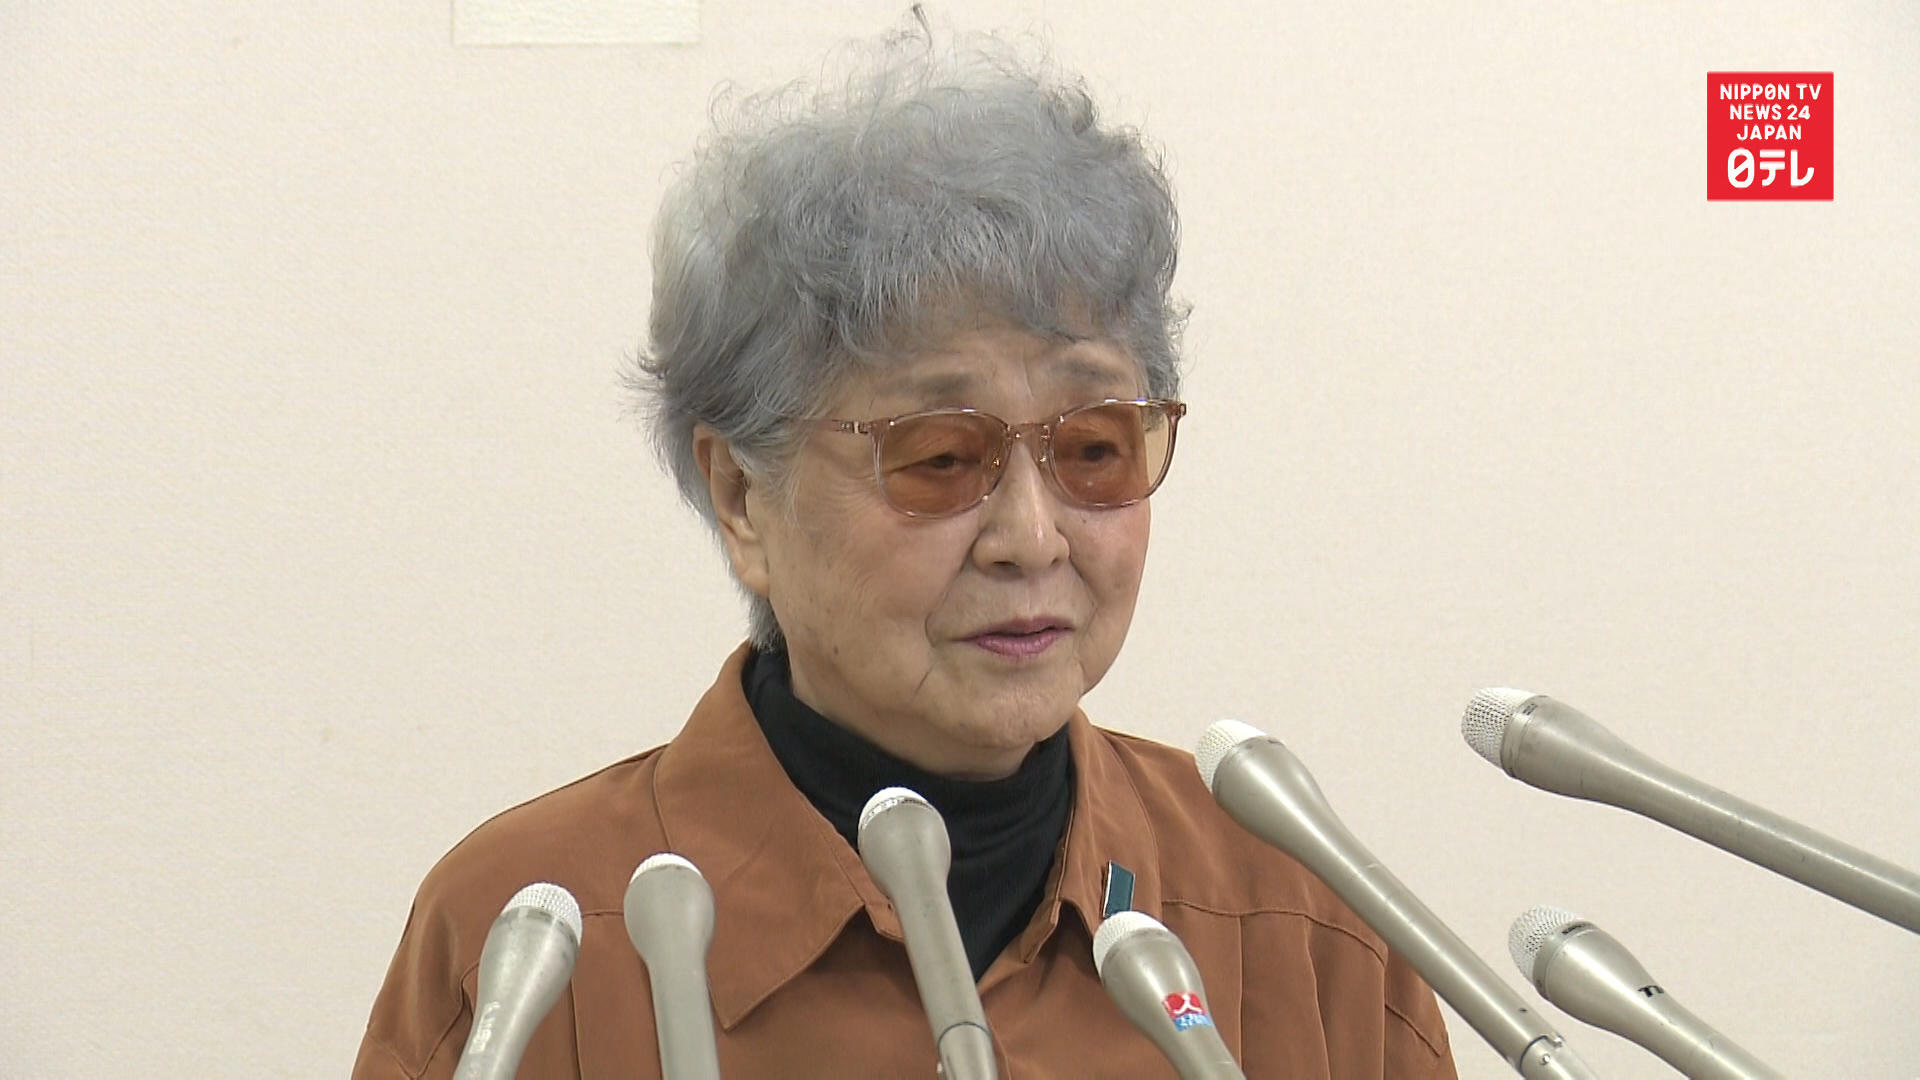 Megumi Yokota's abduction - 42 years on